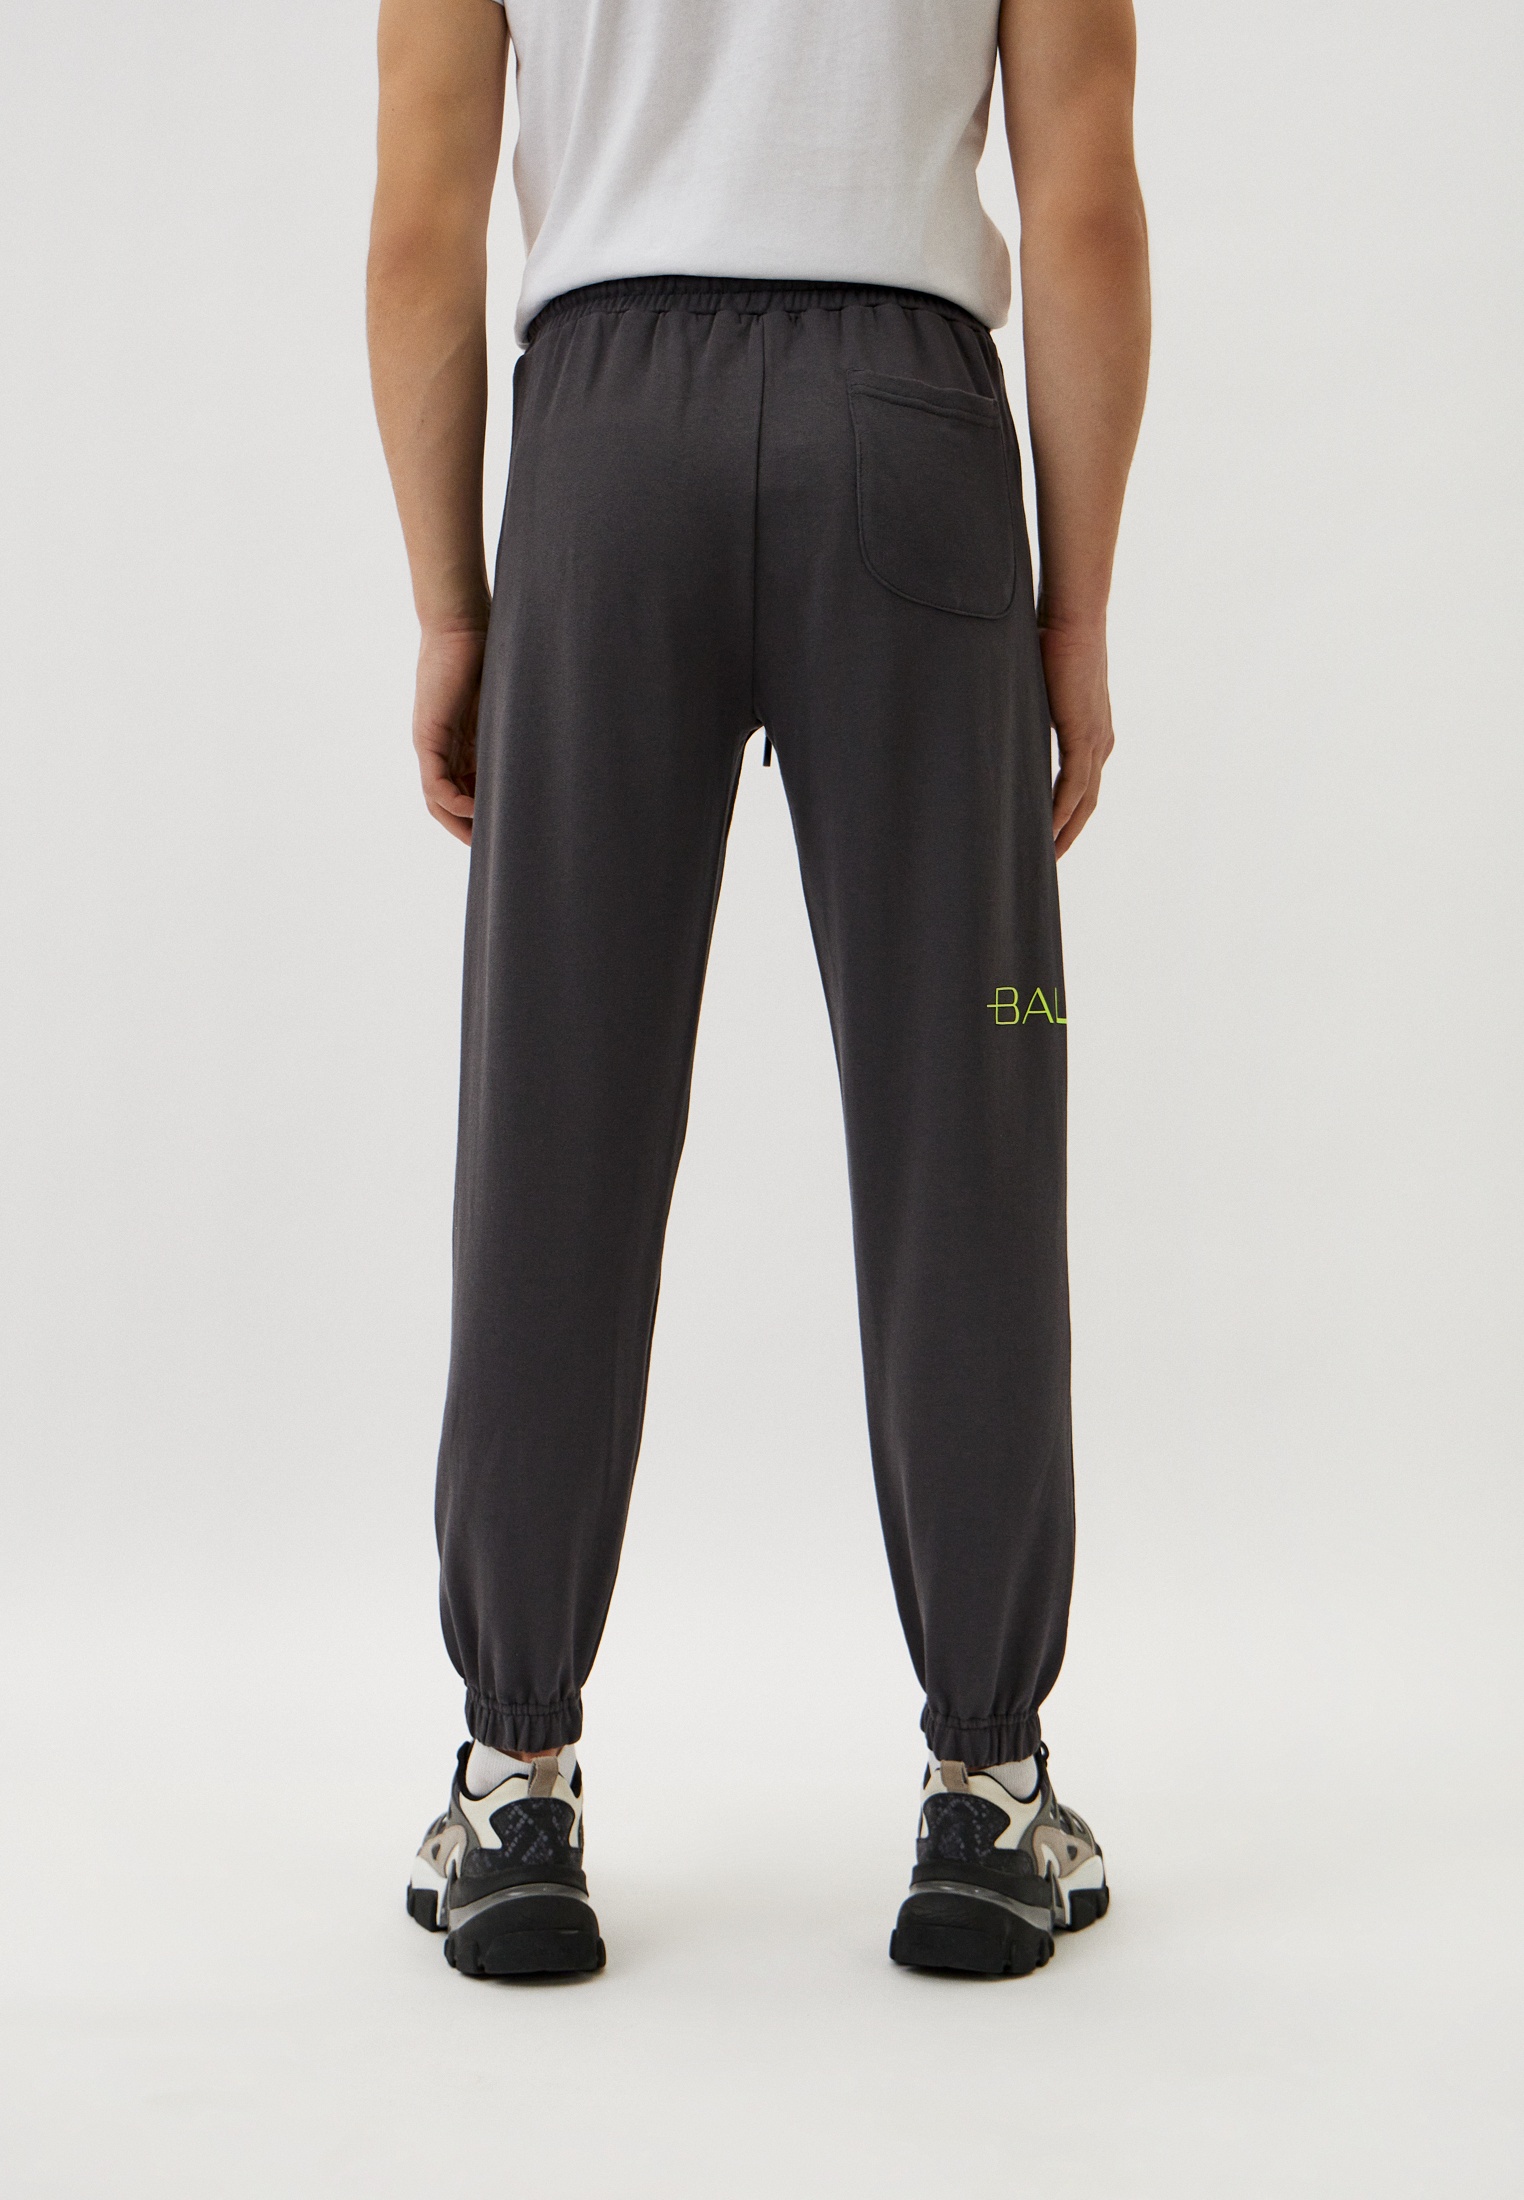 Мужские спортивные брюки Baldinini (Балдинини) M217: изображение 3